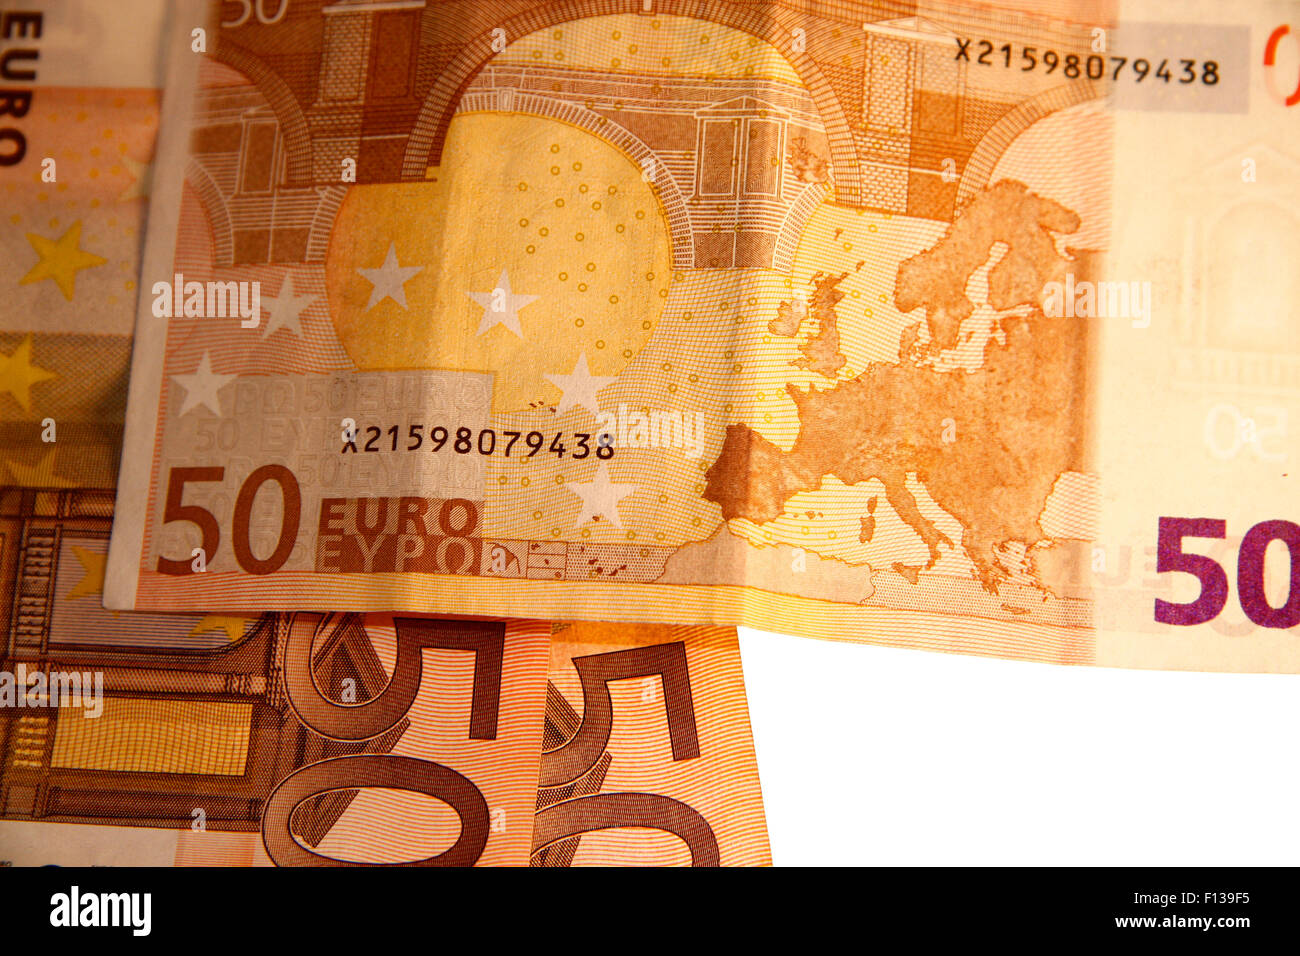 50 Euro-Scheine - Symbolbild Geld. Stock Photo